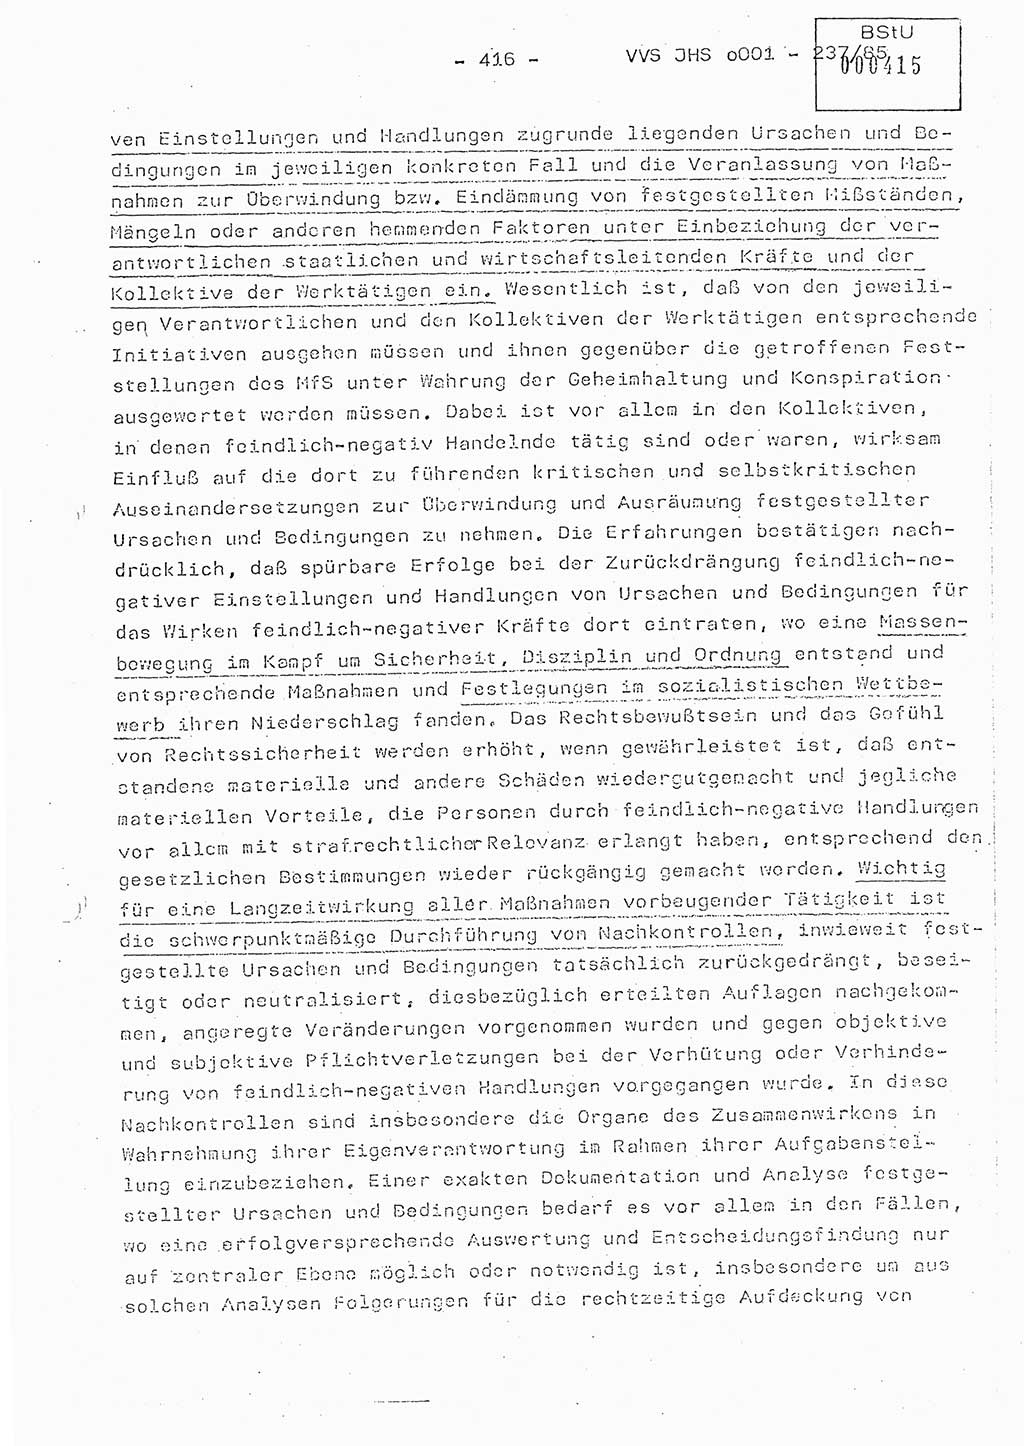 Dissertation Oberstleutnant Peter Jakulski (JHS), Oberstleutnat Christian Rudolph (HA Ⅸ), Major Horst Böttger (ZMD), Major Wolfgang Grüneberg (JHS), Major Albert Meutsch (JHS), Ministerium für Staatssicherheit (MfS) [Deutsche Demokratische Republik (DDR)], Juristische Hochschule (JHS), Vertrauliche Verschlußsache (VVS) o001-237/85, Potsdam 1985, Seite 416 (Diss. MfS DDR JHS VVS o001-237/85 1985, S. 416)